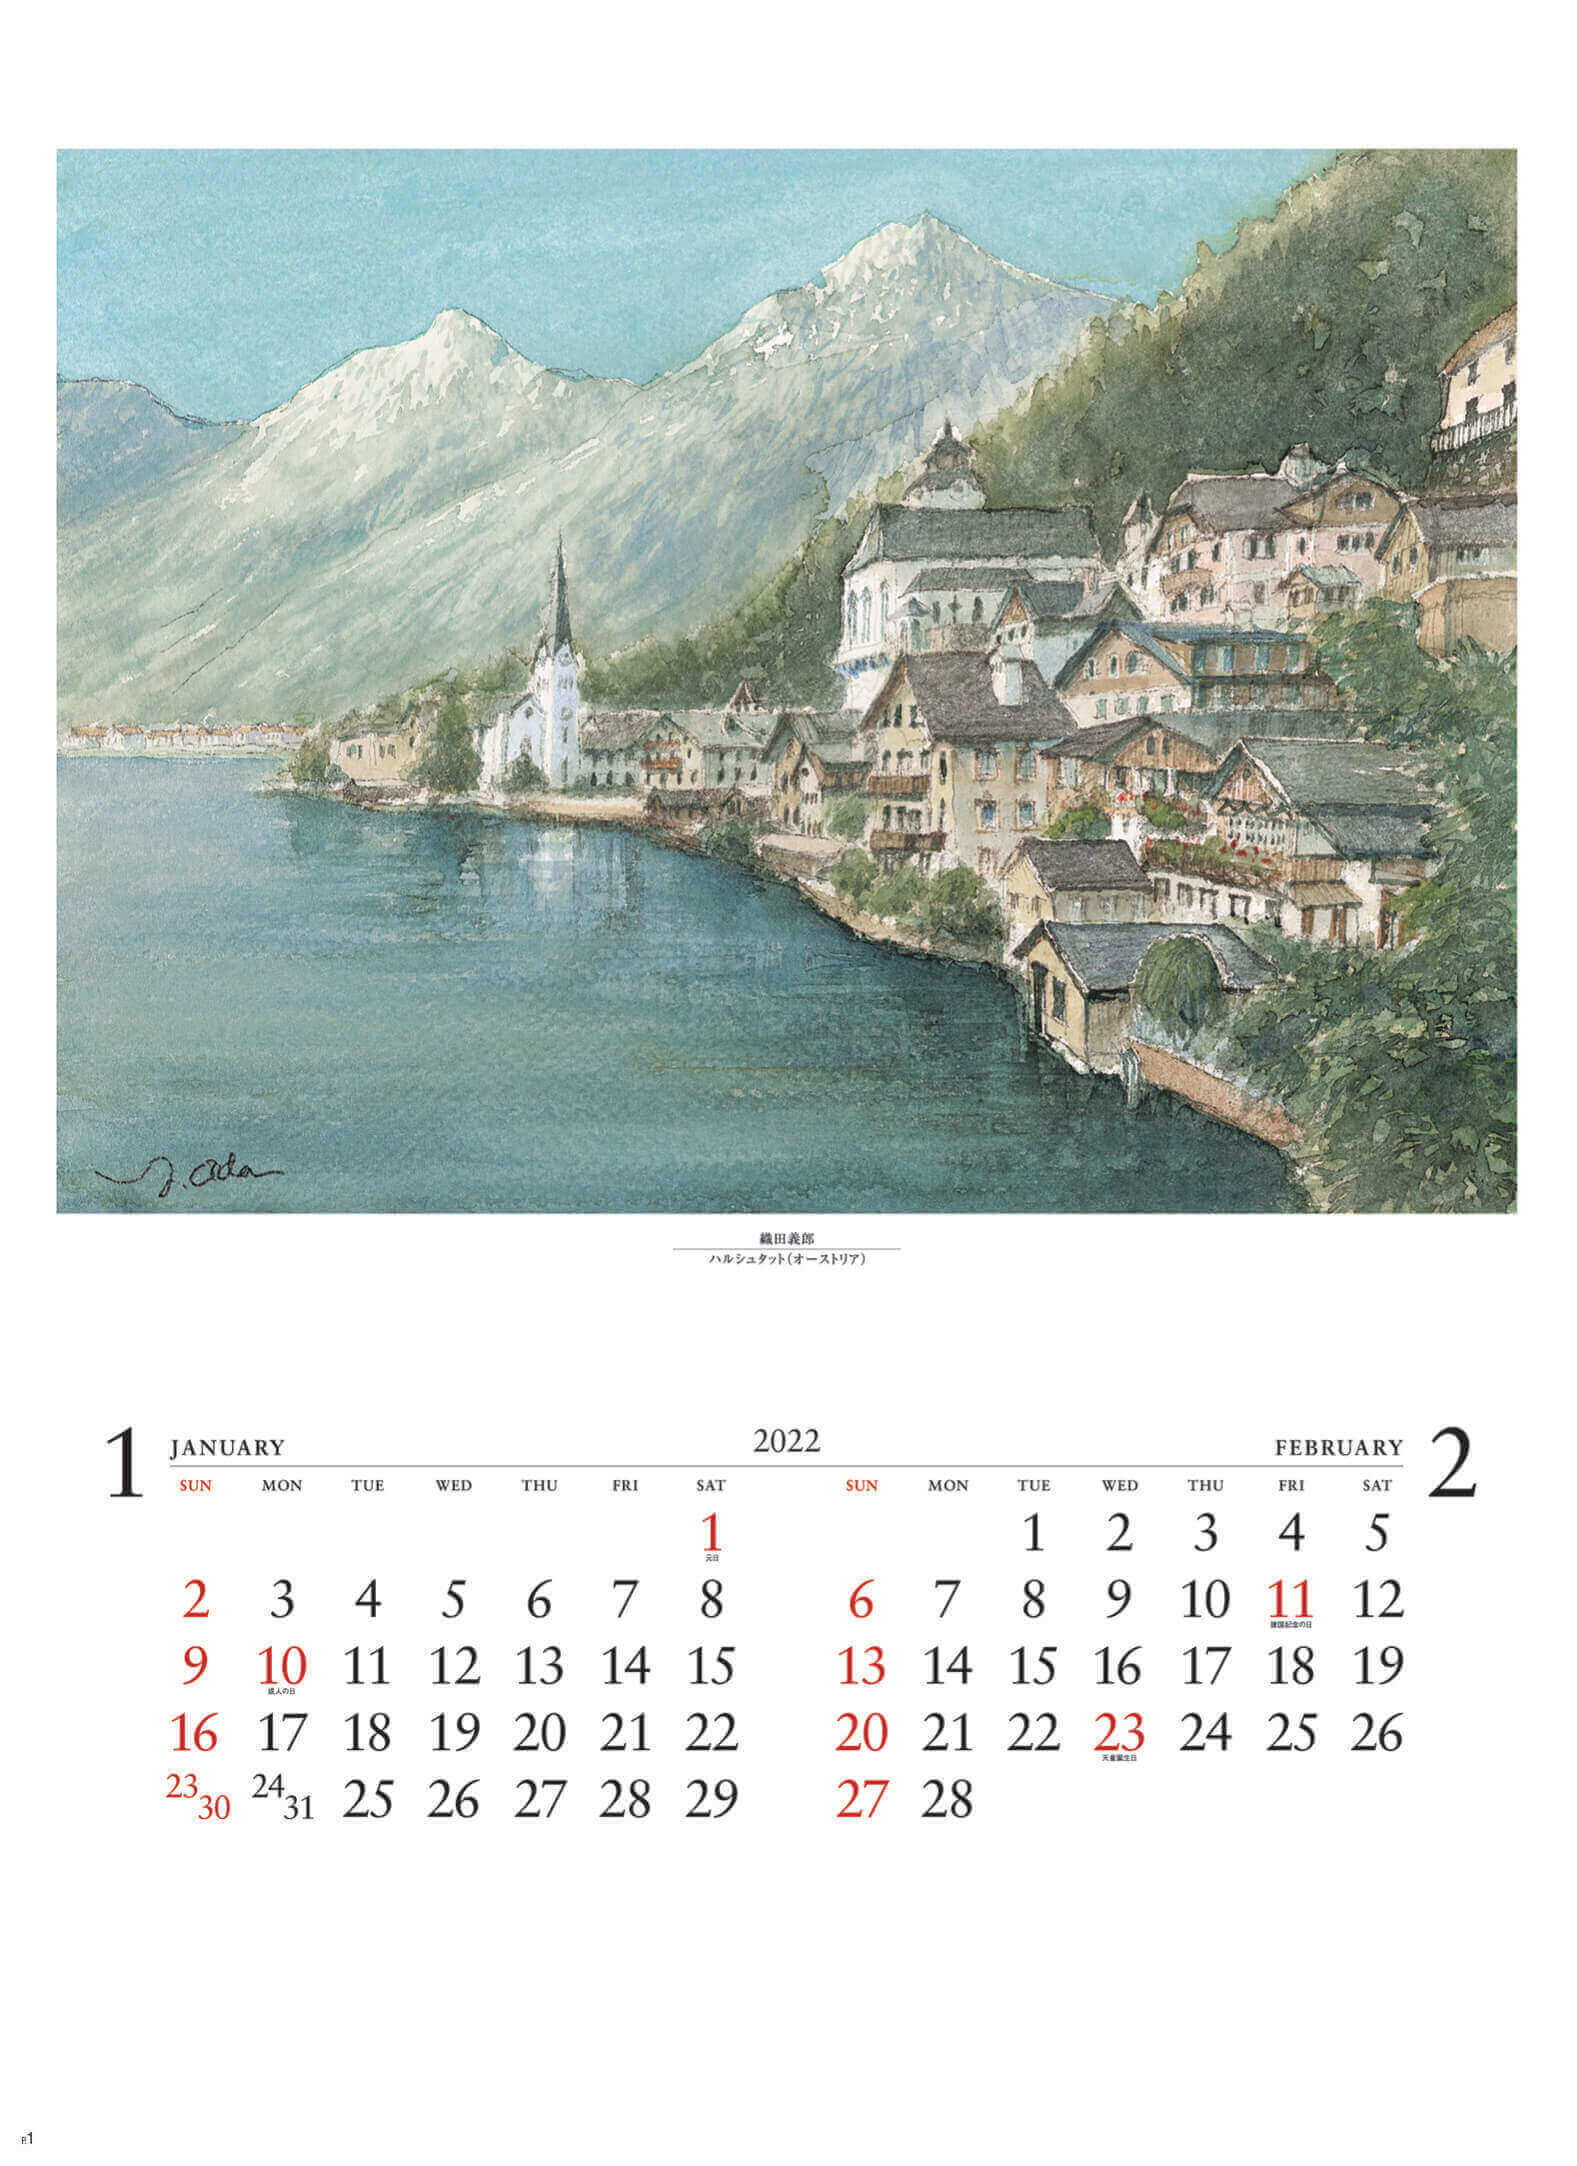 1-2月 ハルシュタット オーストリア ヨーロッパ散歩道 織田義郎 2022年カレンダーの画像